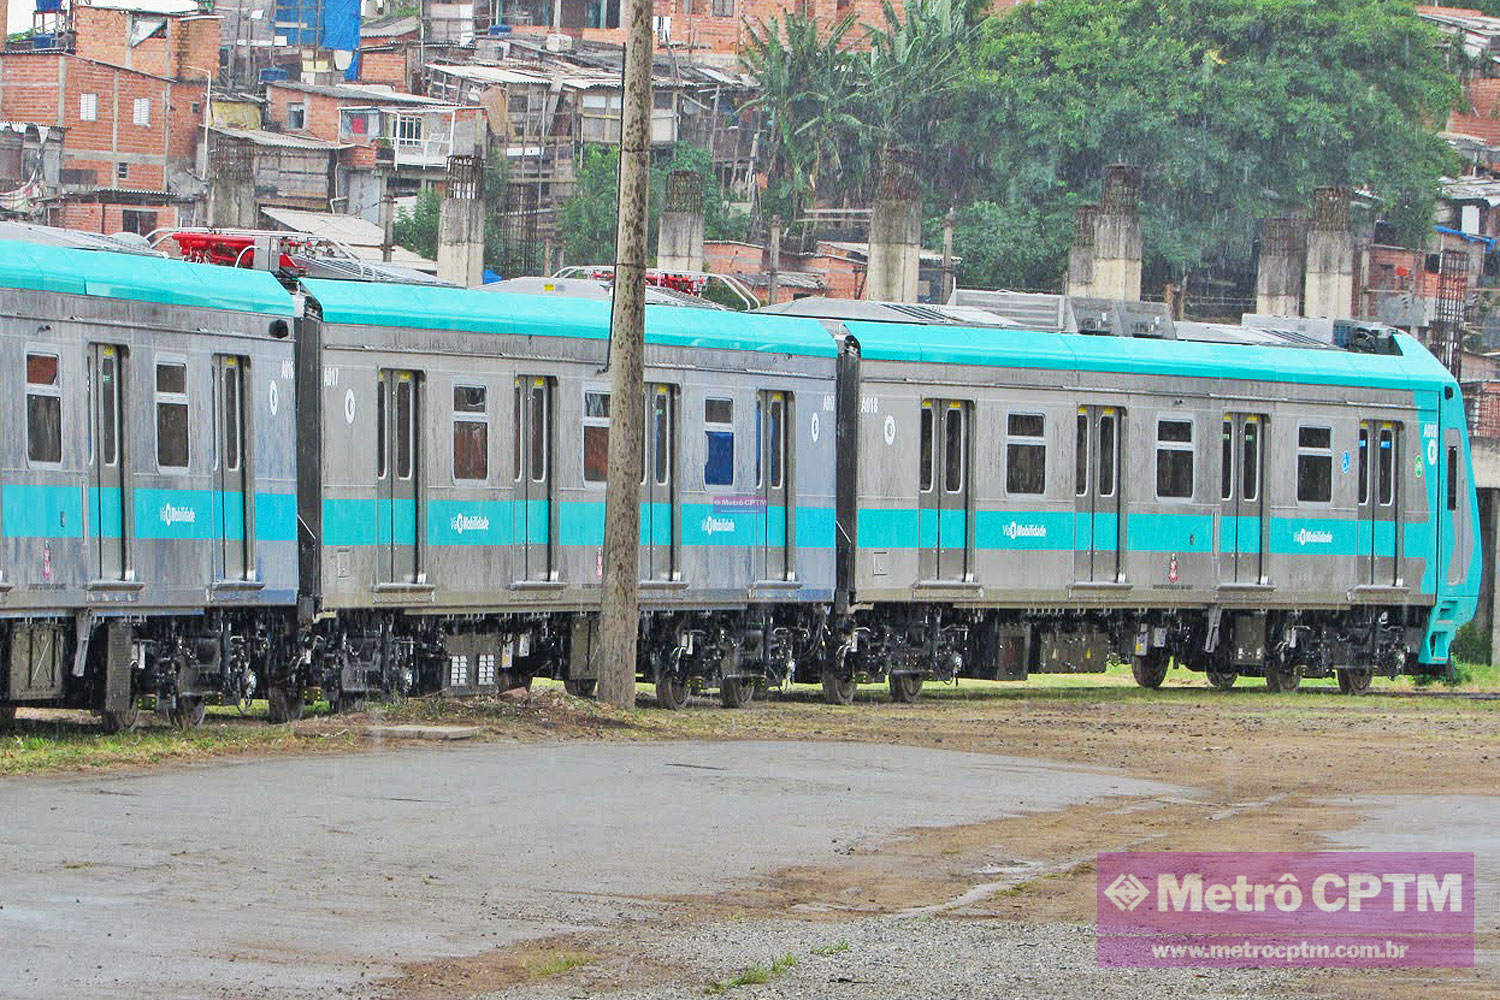 Primeiro trem da Série 8900, da ViaMobilidade, iniciou testes operacionais  nas linhas 8 e 9 - Metrô CPTM